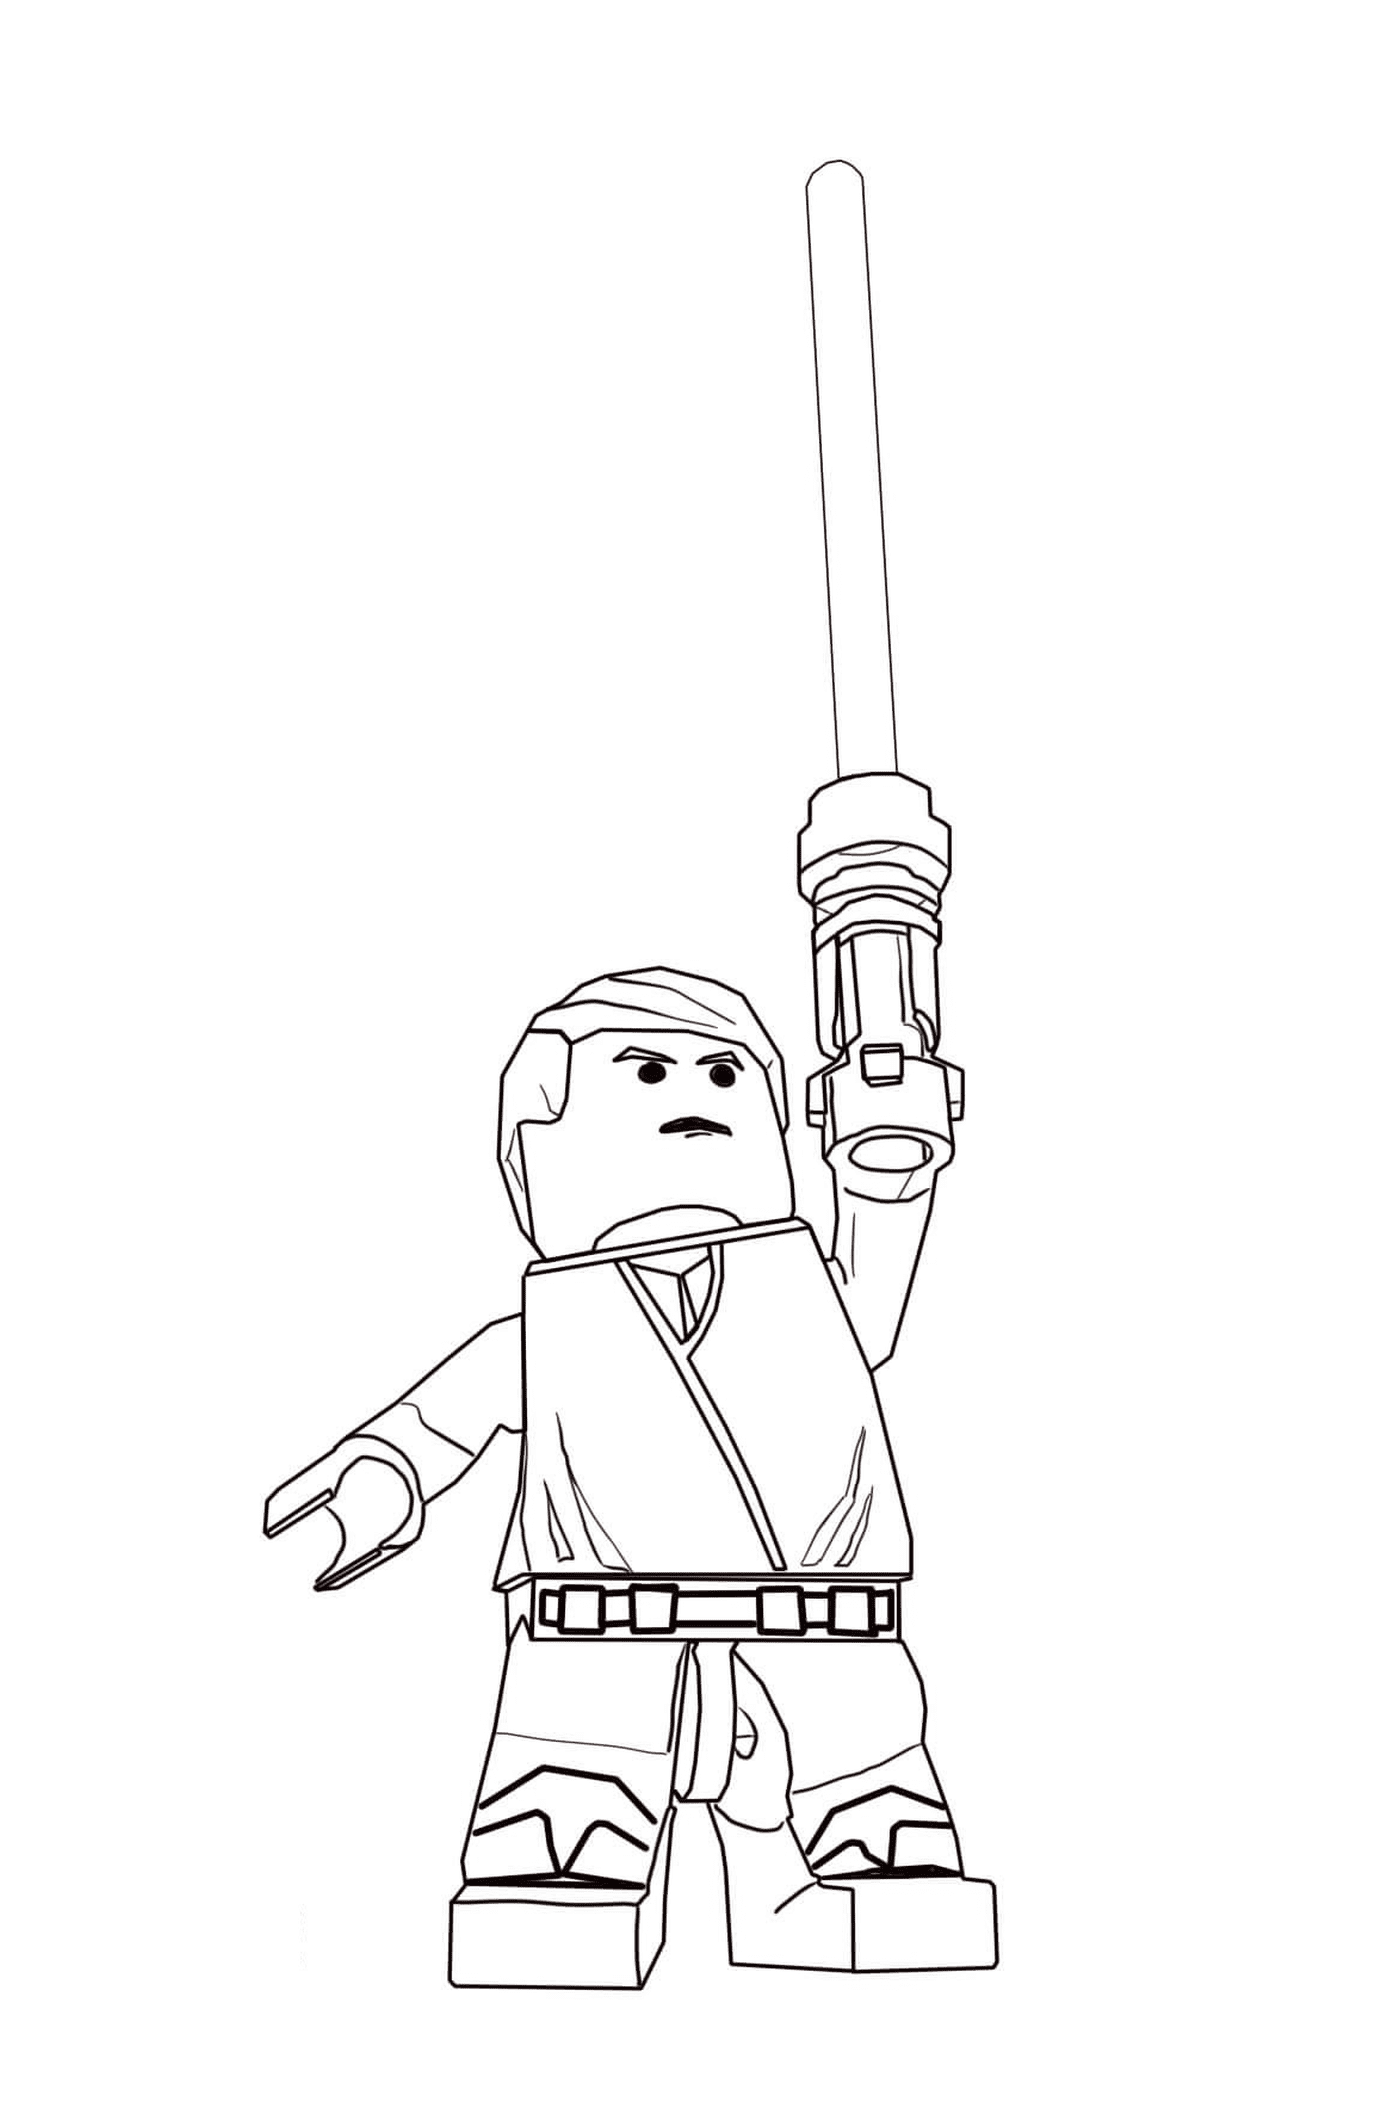  Lego Star Wars personaje con una espada láser 